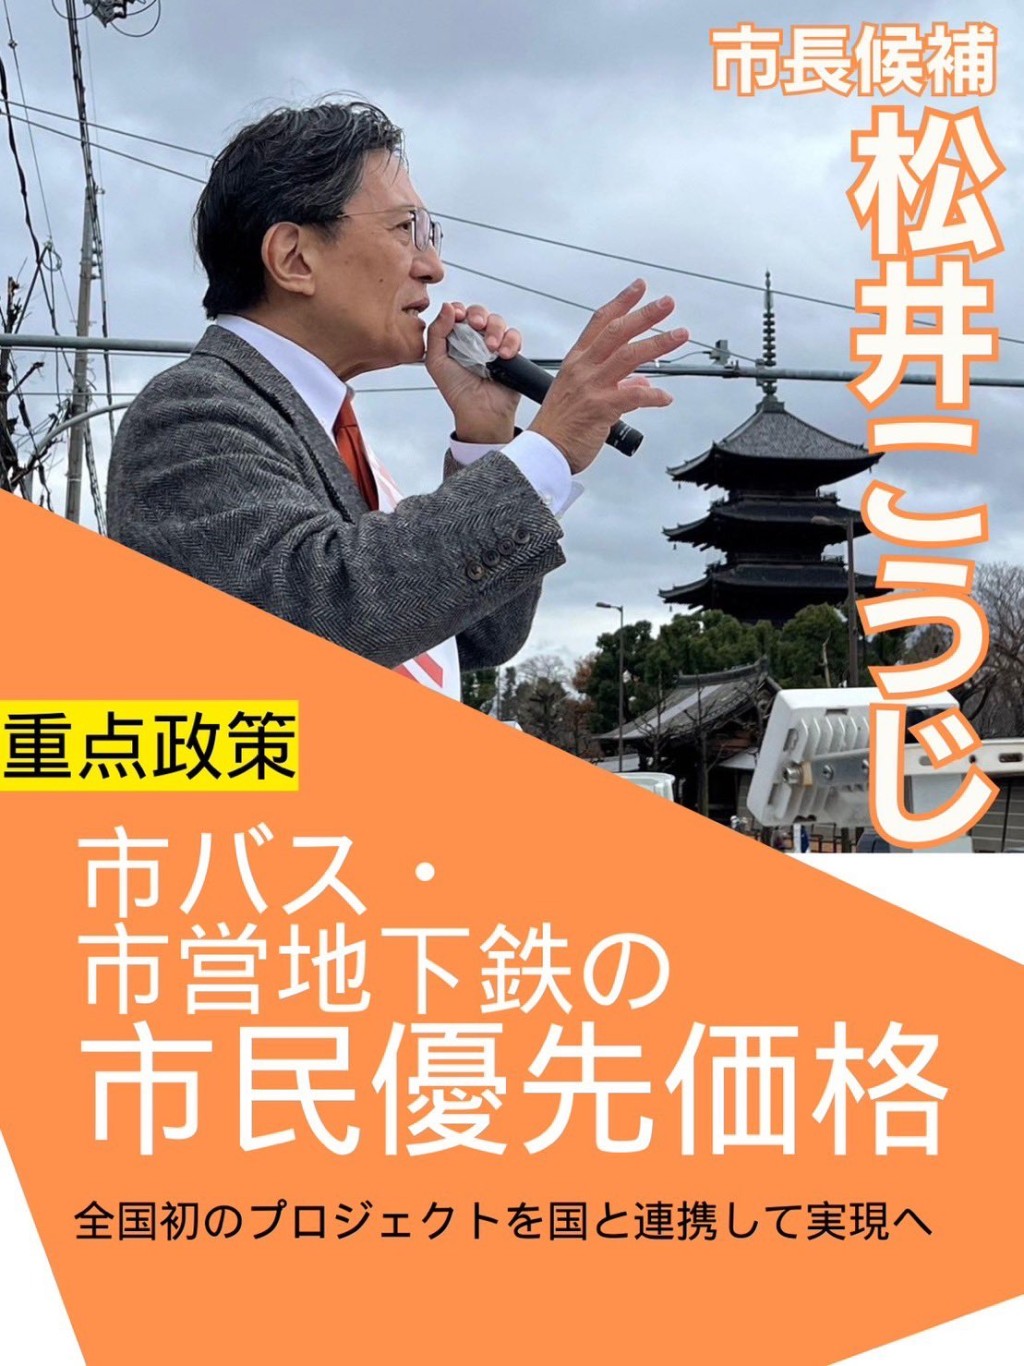 松井孝治建议巴士地铁「分级收费」，市民较游客便宜。 X